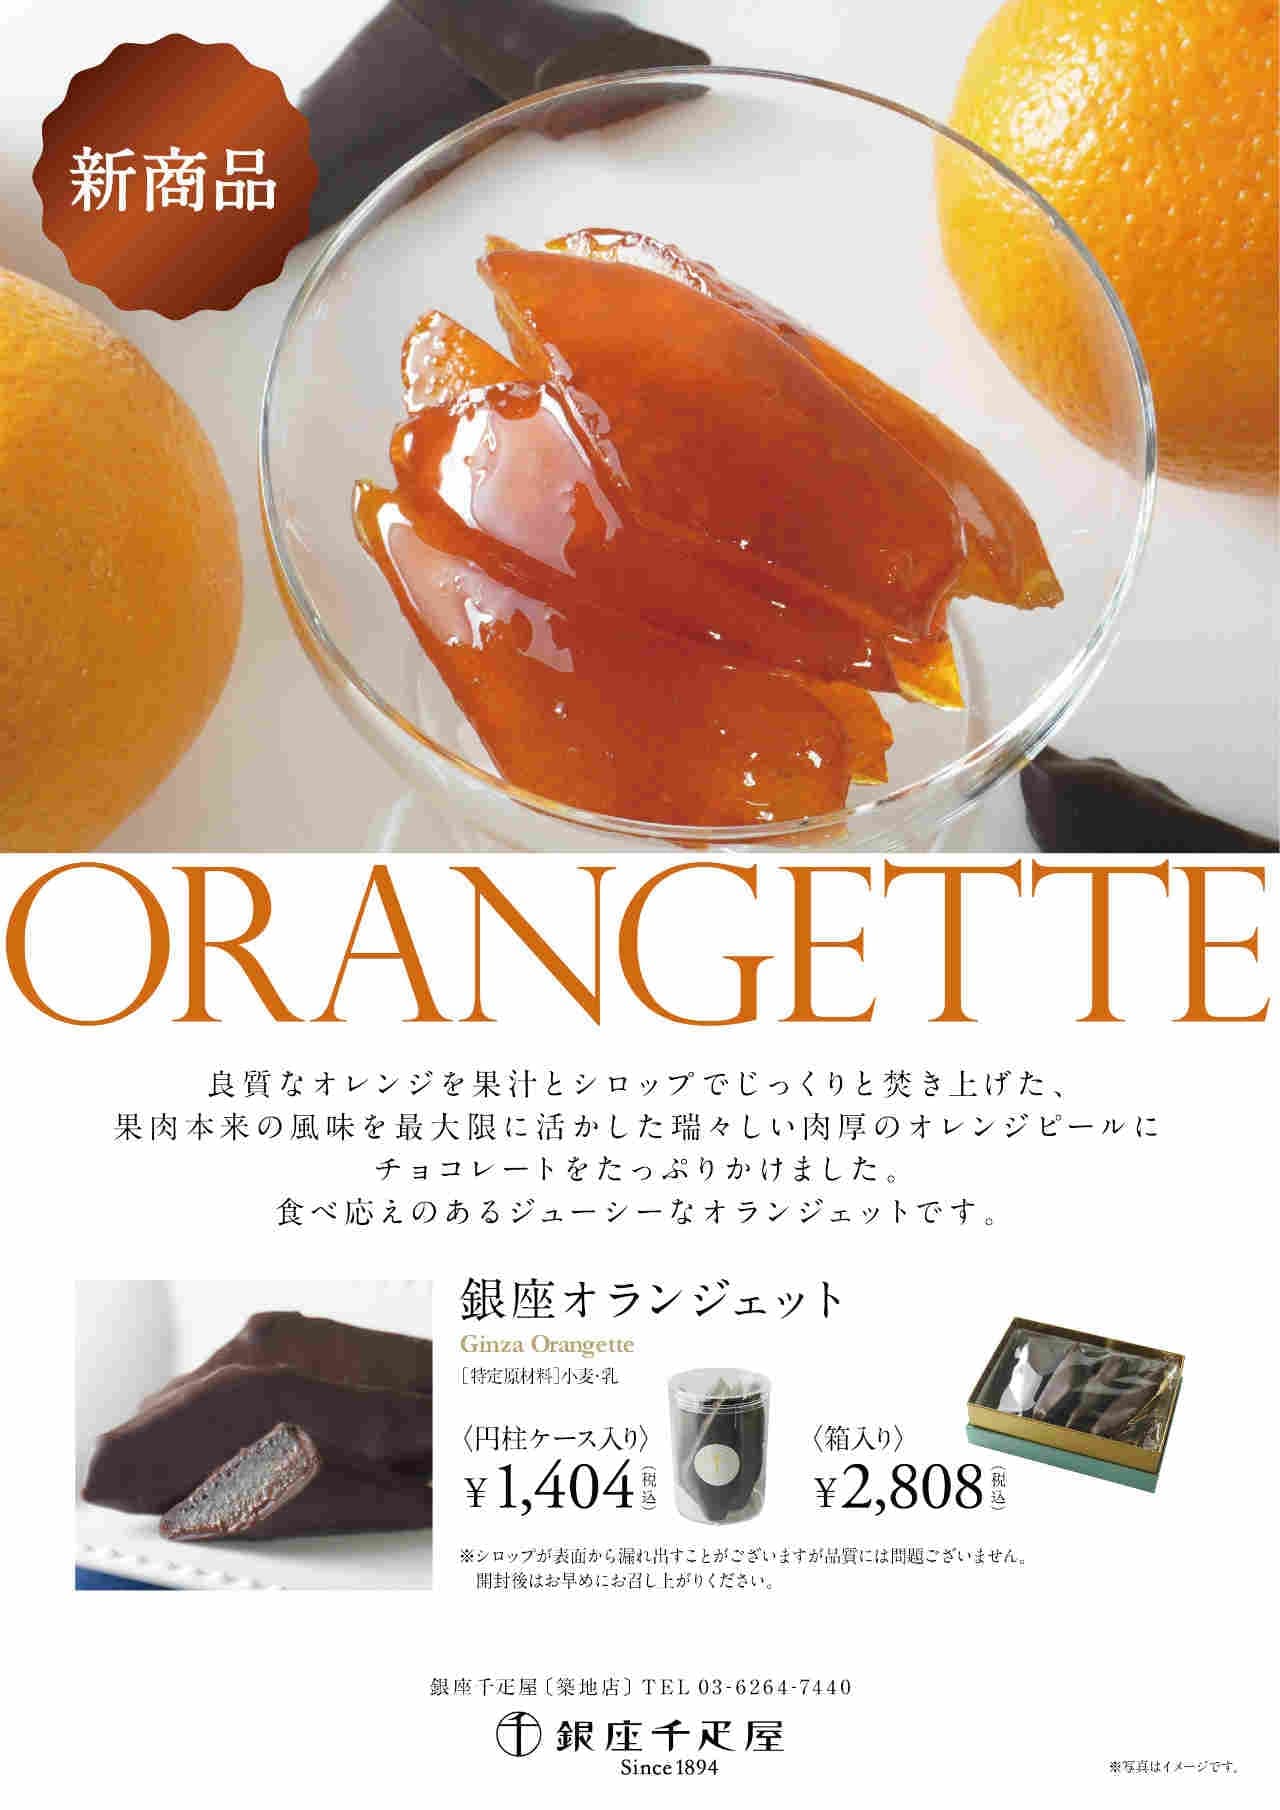 Ginza Sembikiya "Ginza Orangette